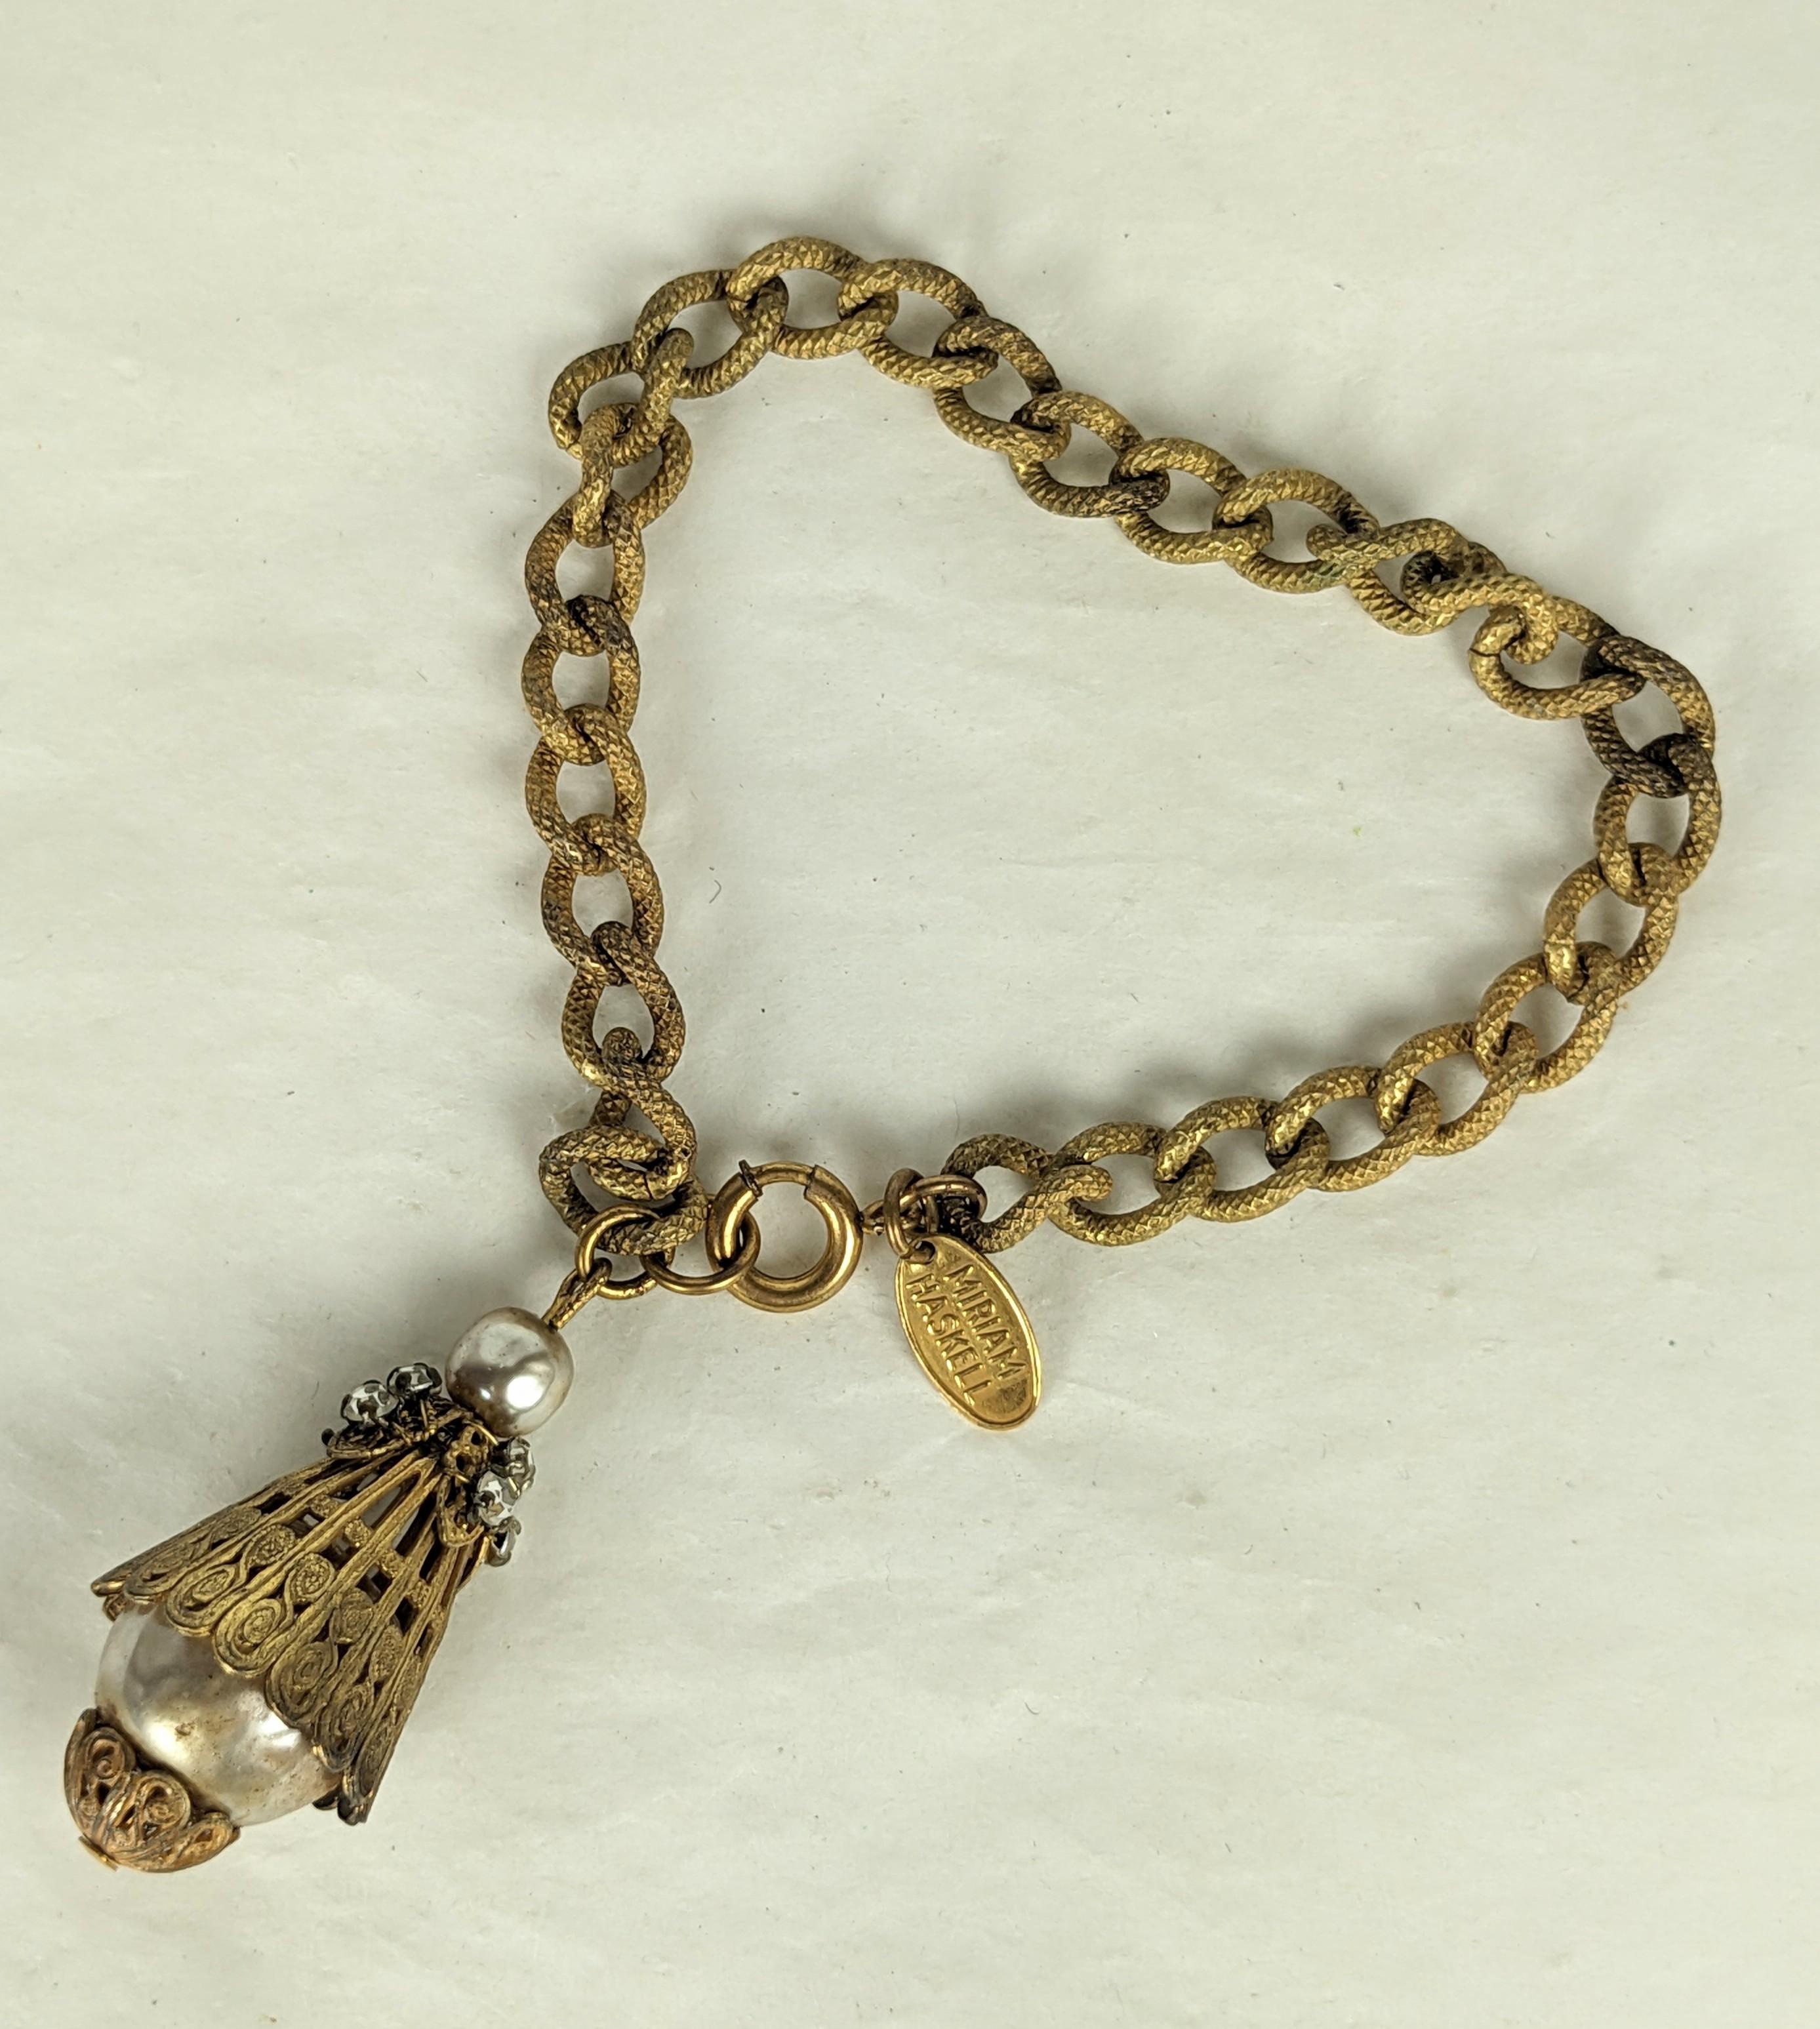 Bracelet-bouton en fausses perles baroques de Miriam Haskell. Composée d'une chaîne à maillons texturés en plaques dorées russes, d'une perle baroque moyenne et grande et de filigranes dorés de style néo-étrusque. Le bouton en forme de lanterne